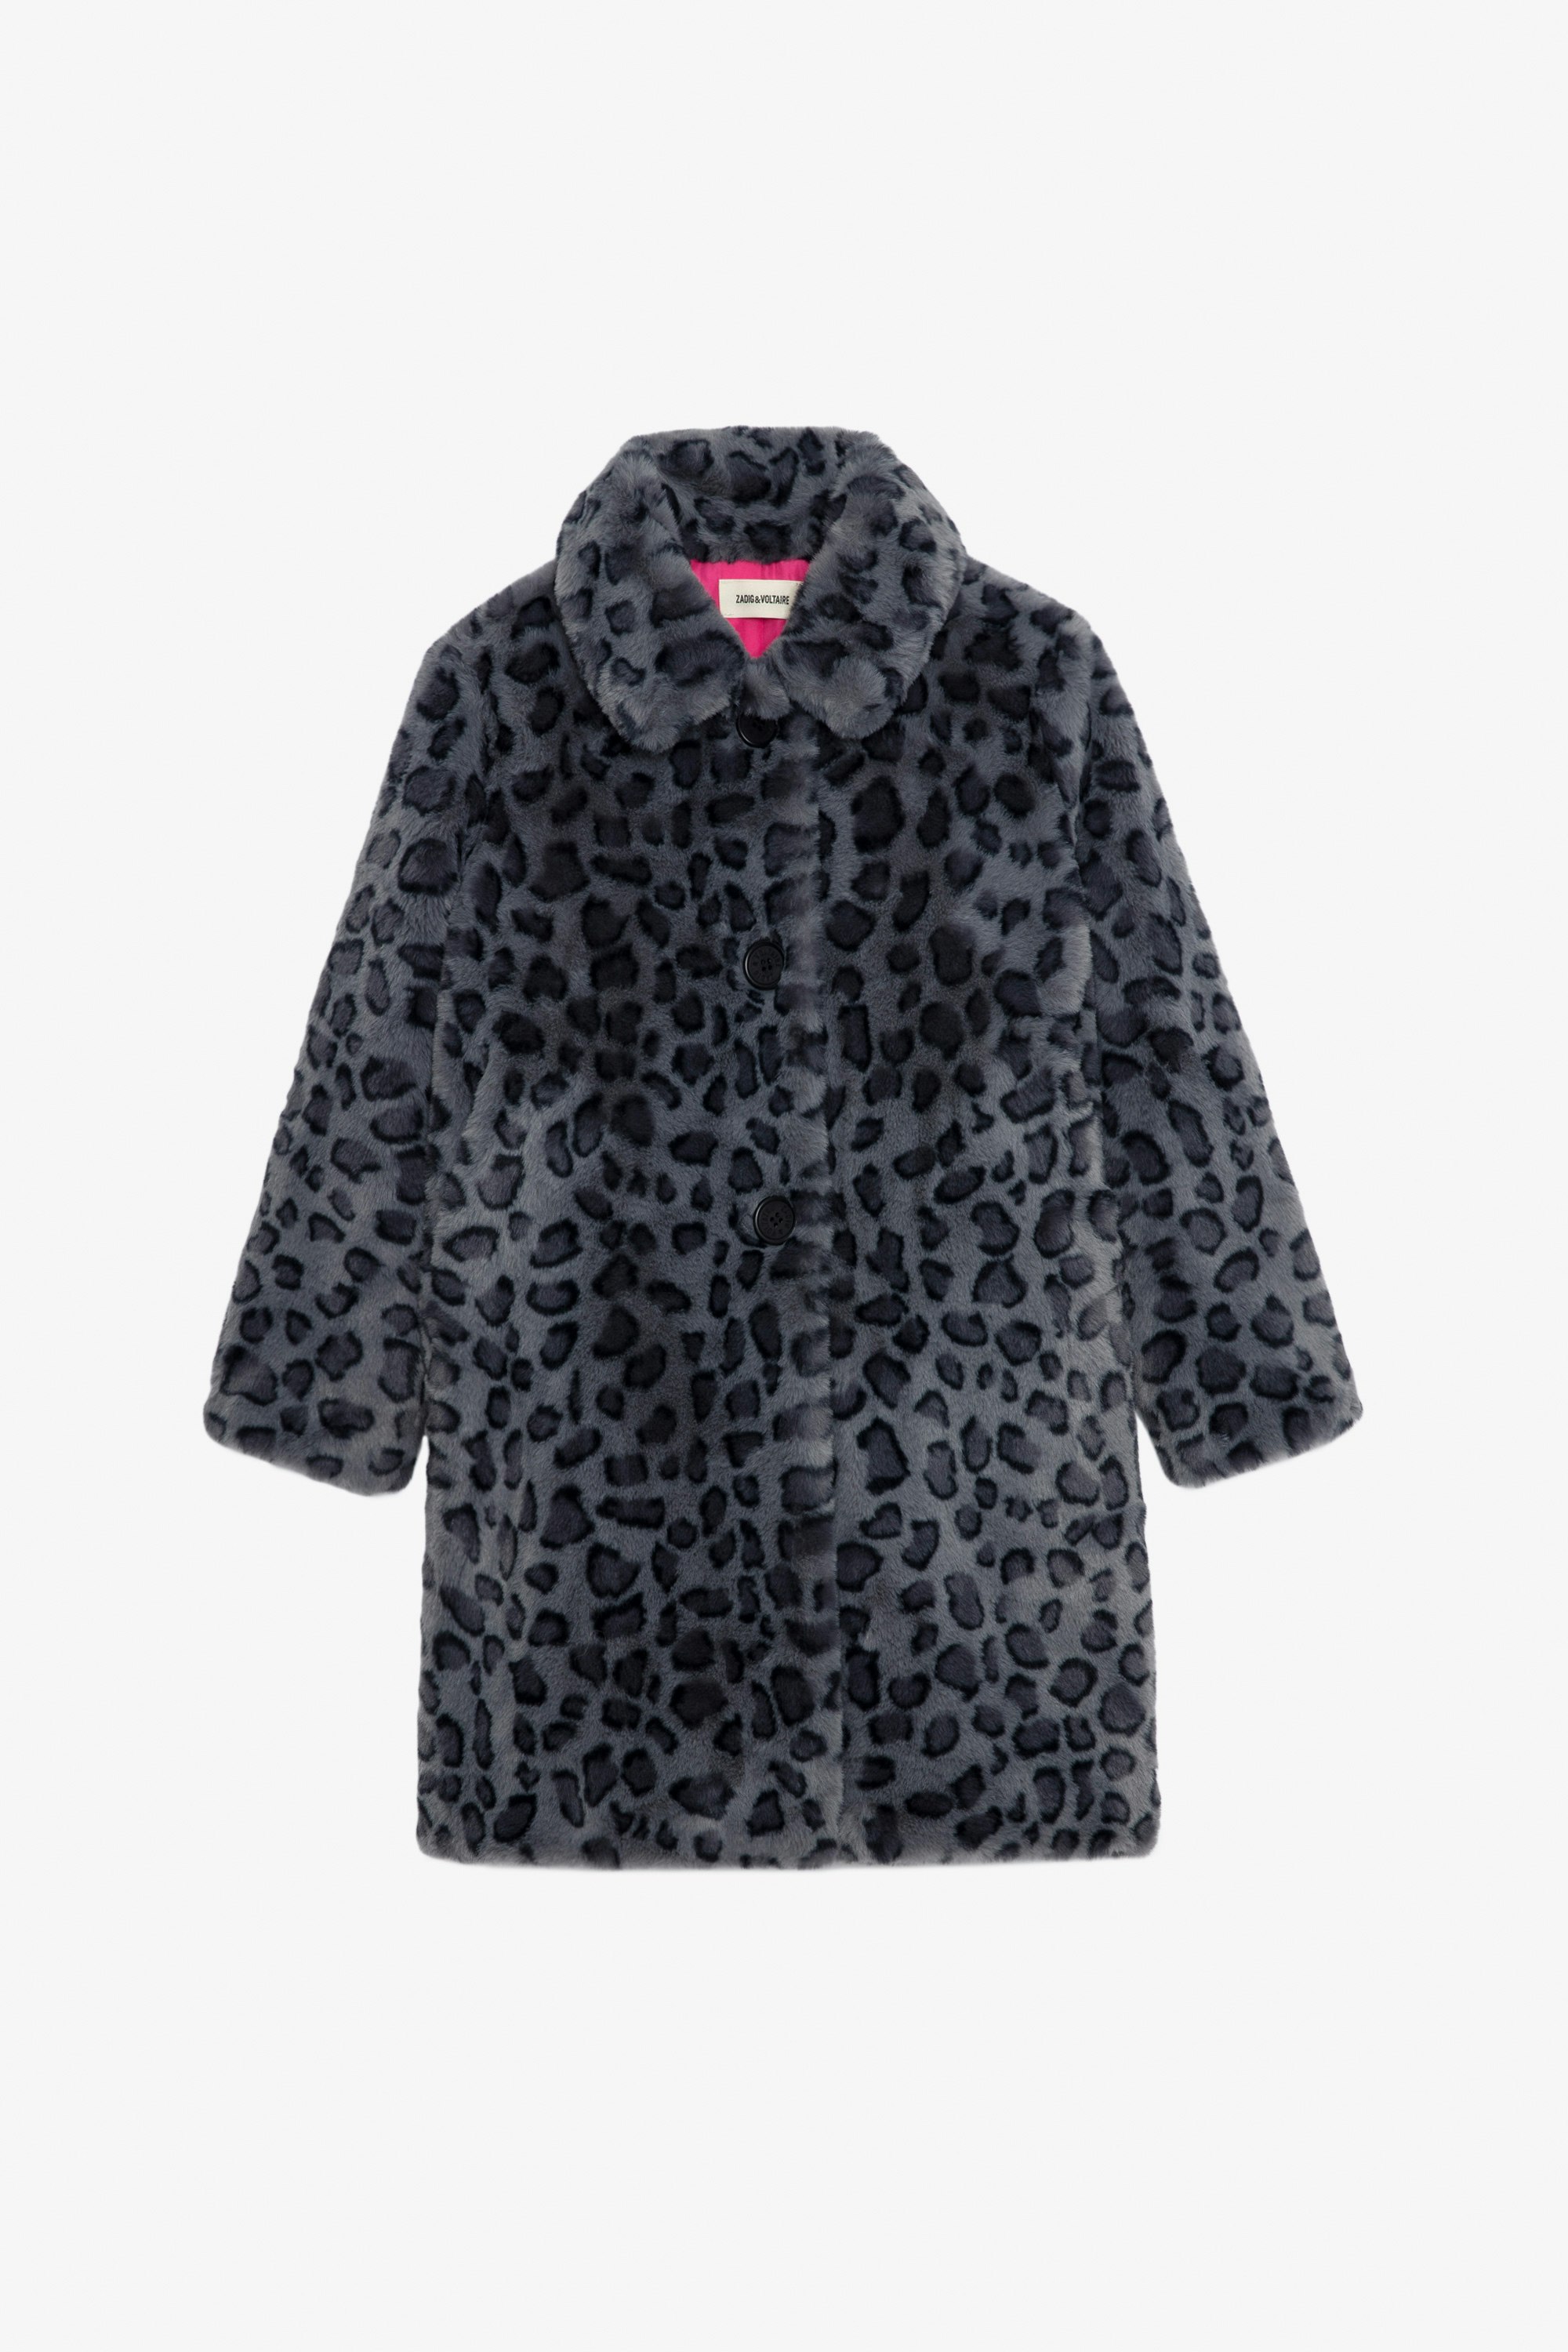 Cappotto Madeleine Bambina - Cappotto in pile nero con stampa leopardata e fodera a contrasto da bambina.